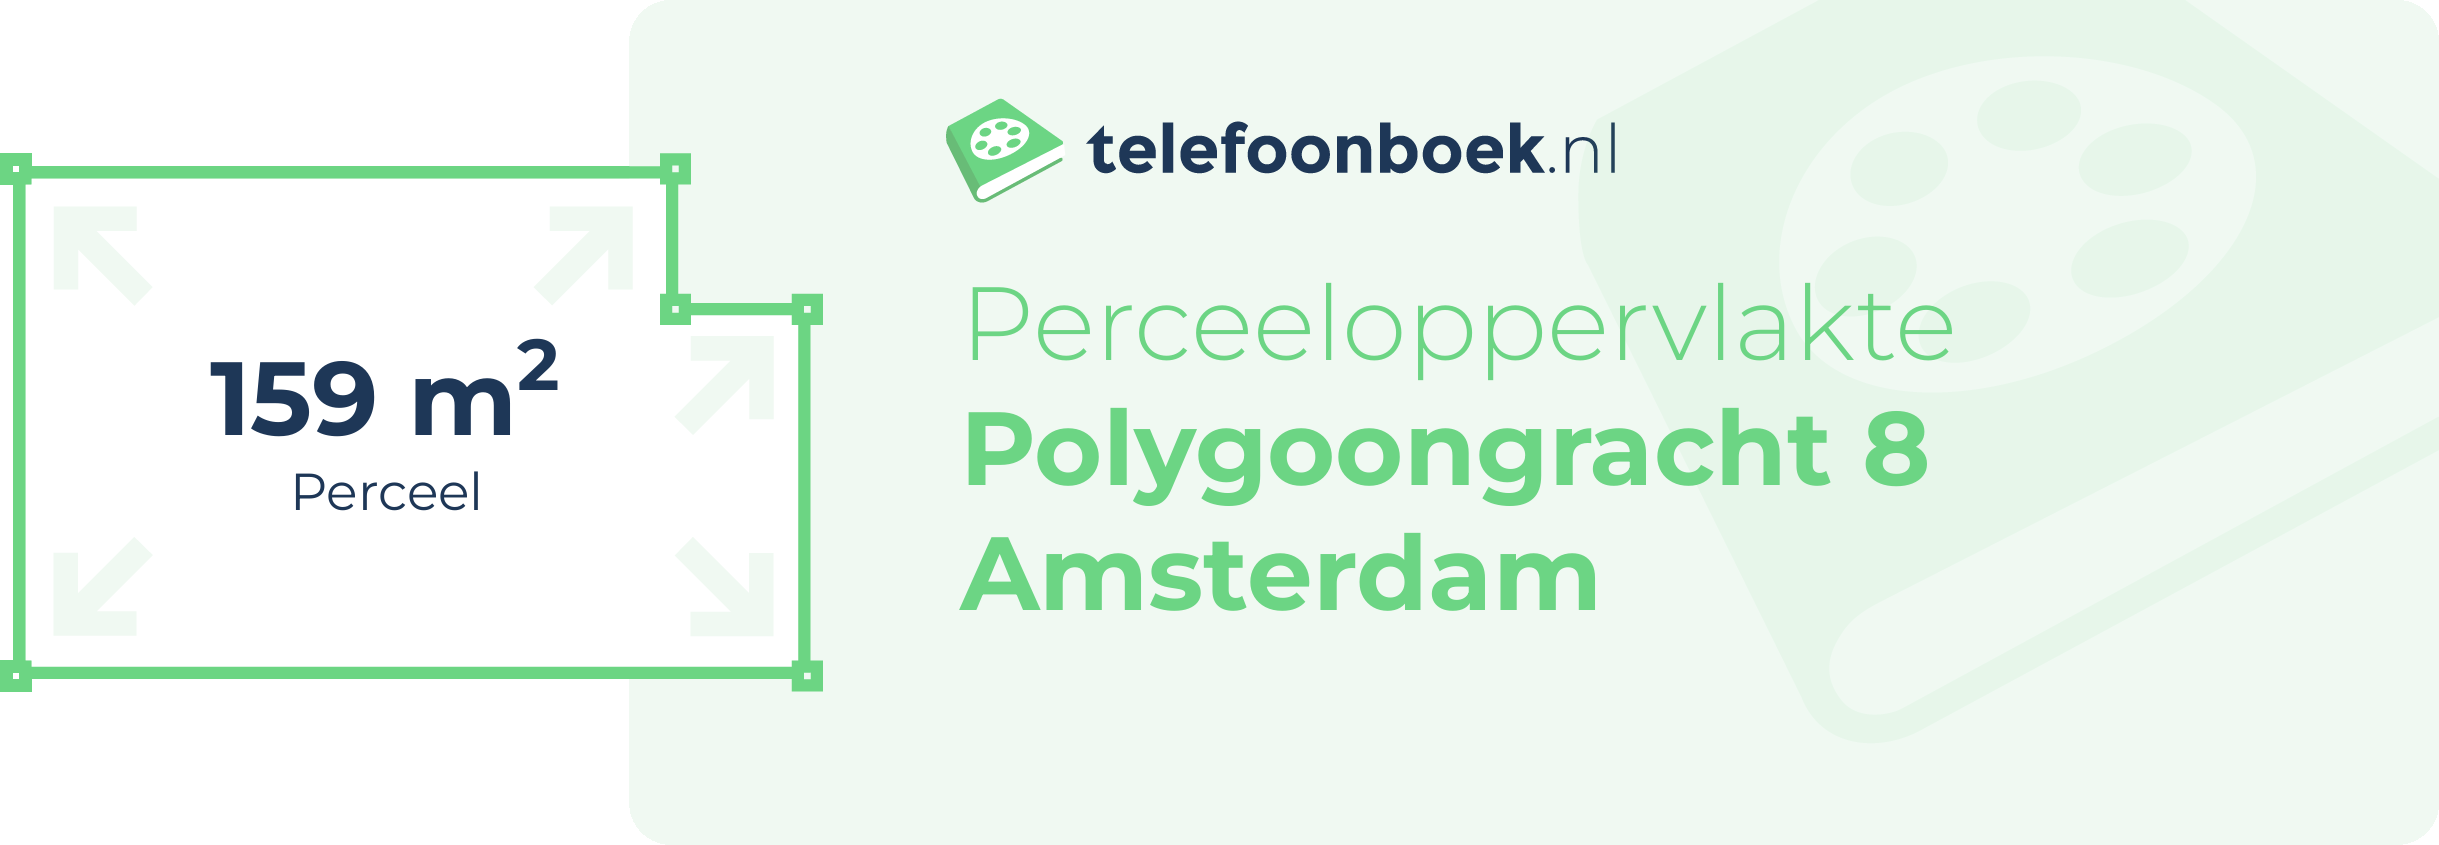 Perceeloppervlakte Polygoongracht 8 Amsterdam